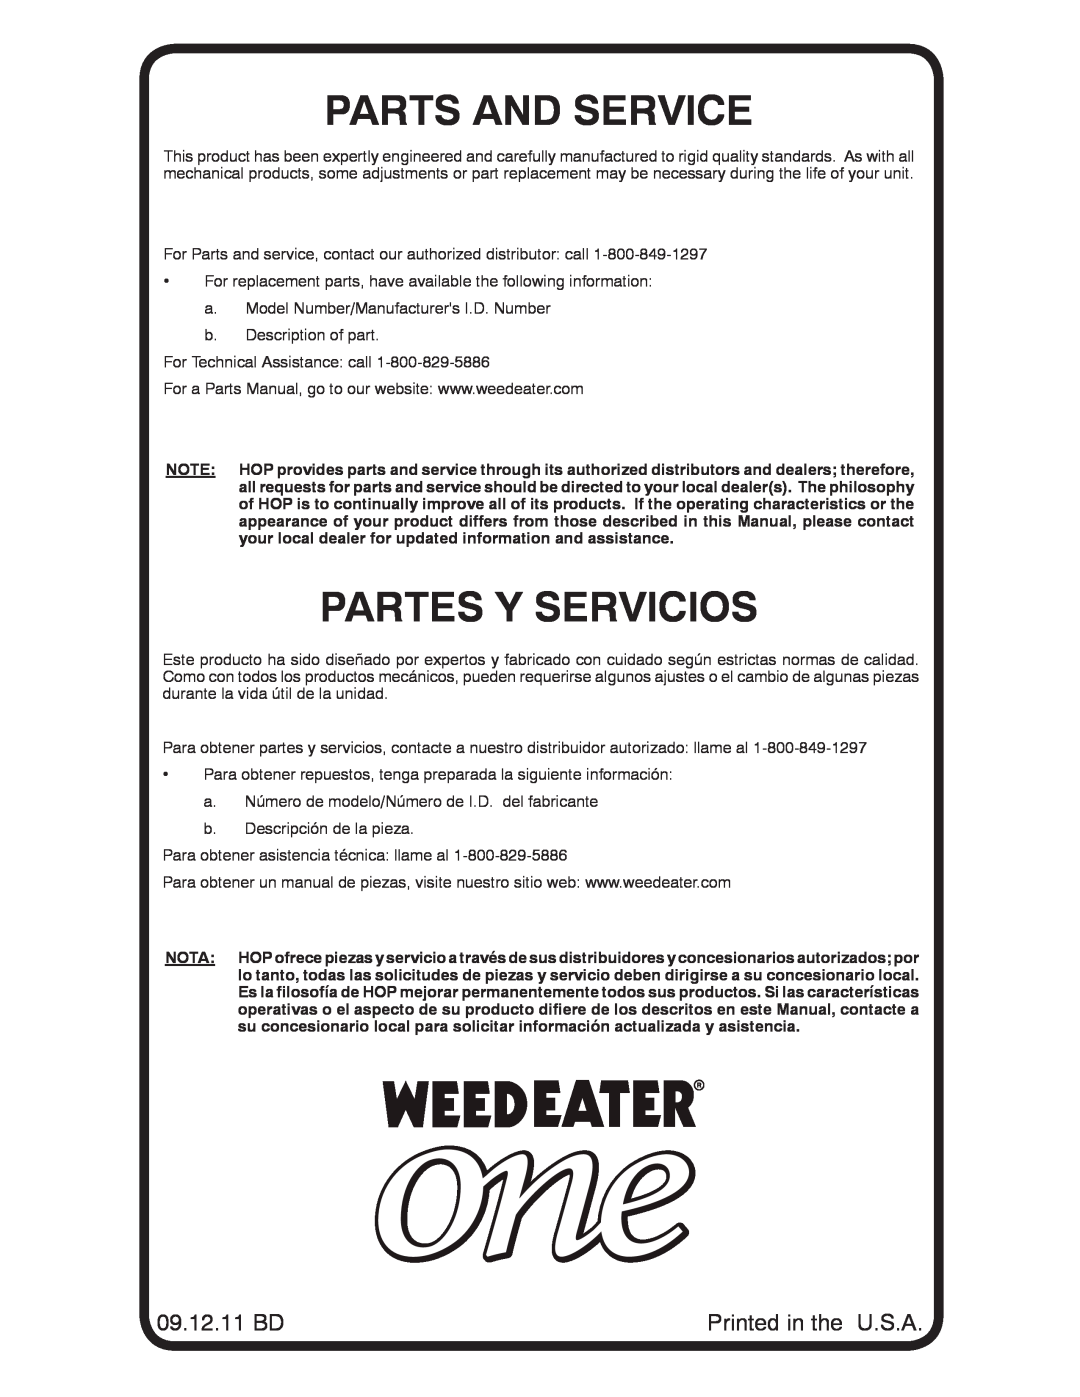 Weed Eater 96026000202, WELRV1 manual Parts And Service, Partes Y Servicios, 09.12.11 BD 